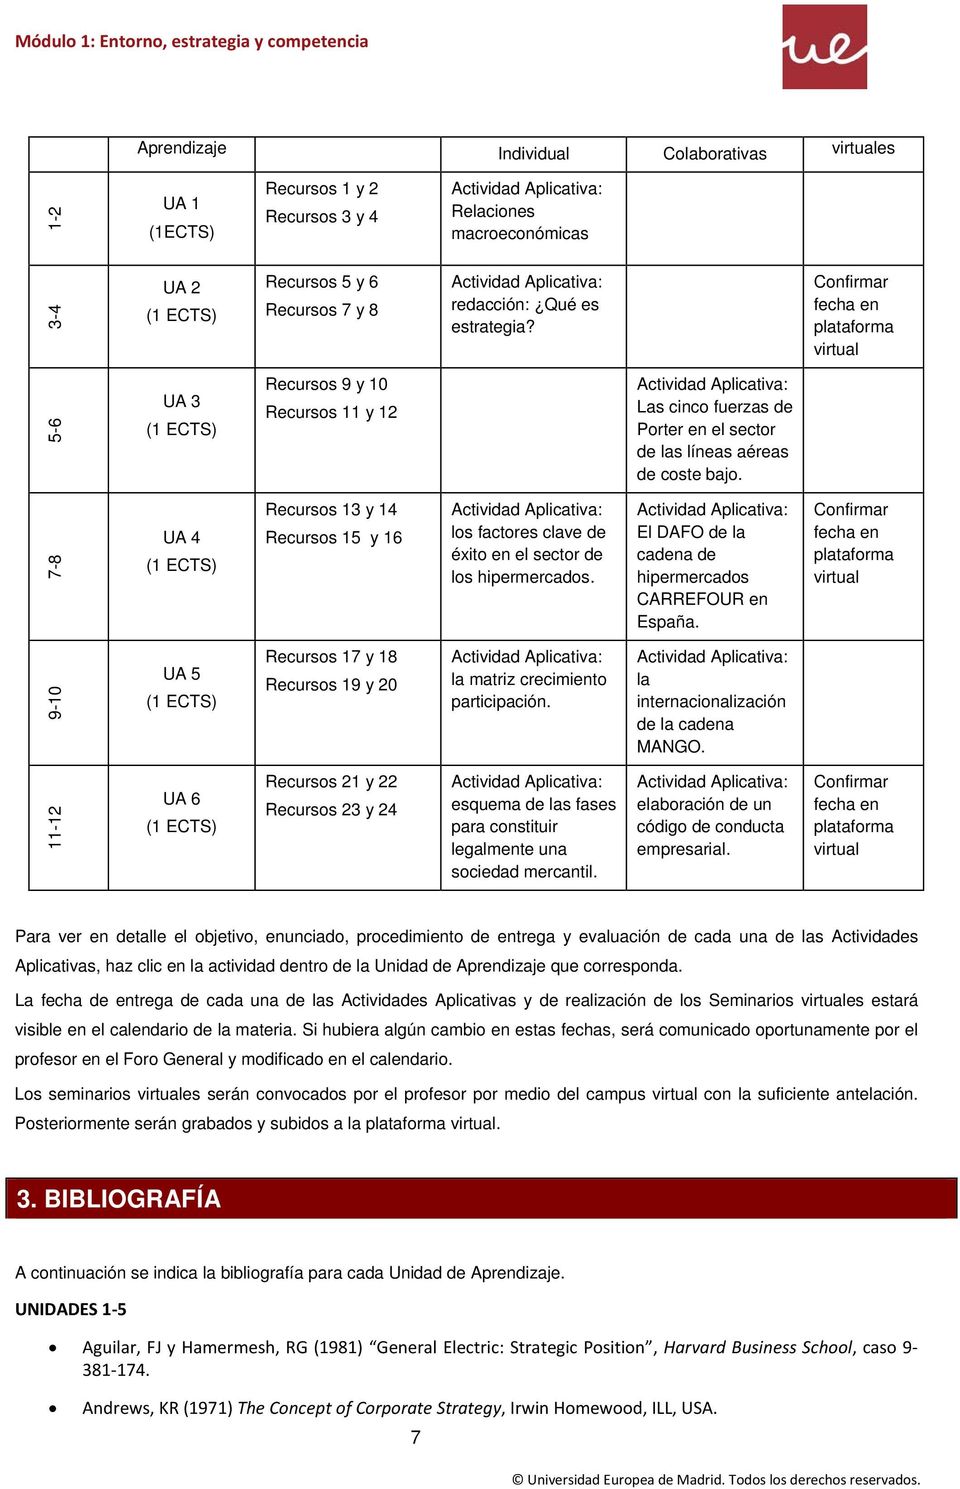 7-8 UA 4 (1 ECTS) Recursos 13 y 14 Recursos 15 y 16 los factores clave de éxito en el sector de los hipermercados. El DAFO de la cadena de hipermercados CARREFOUR en España.